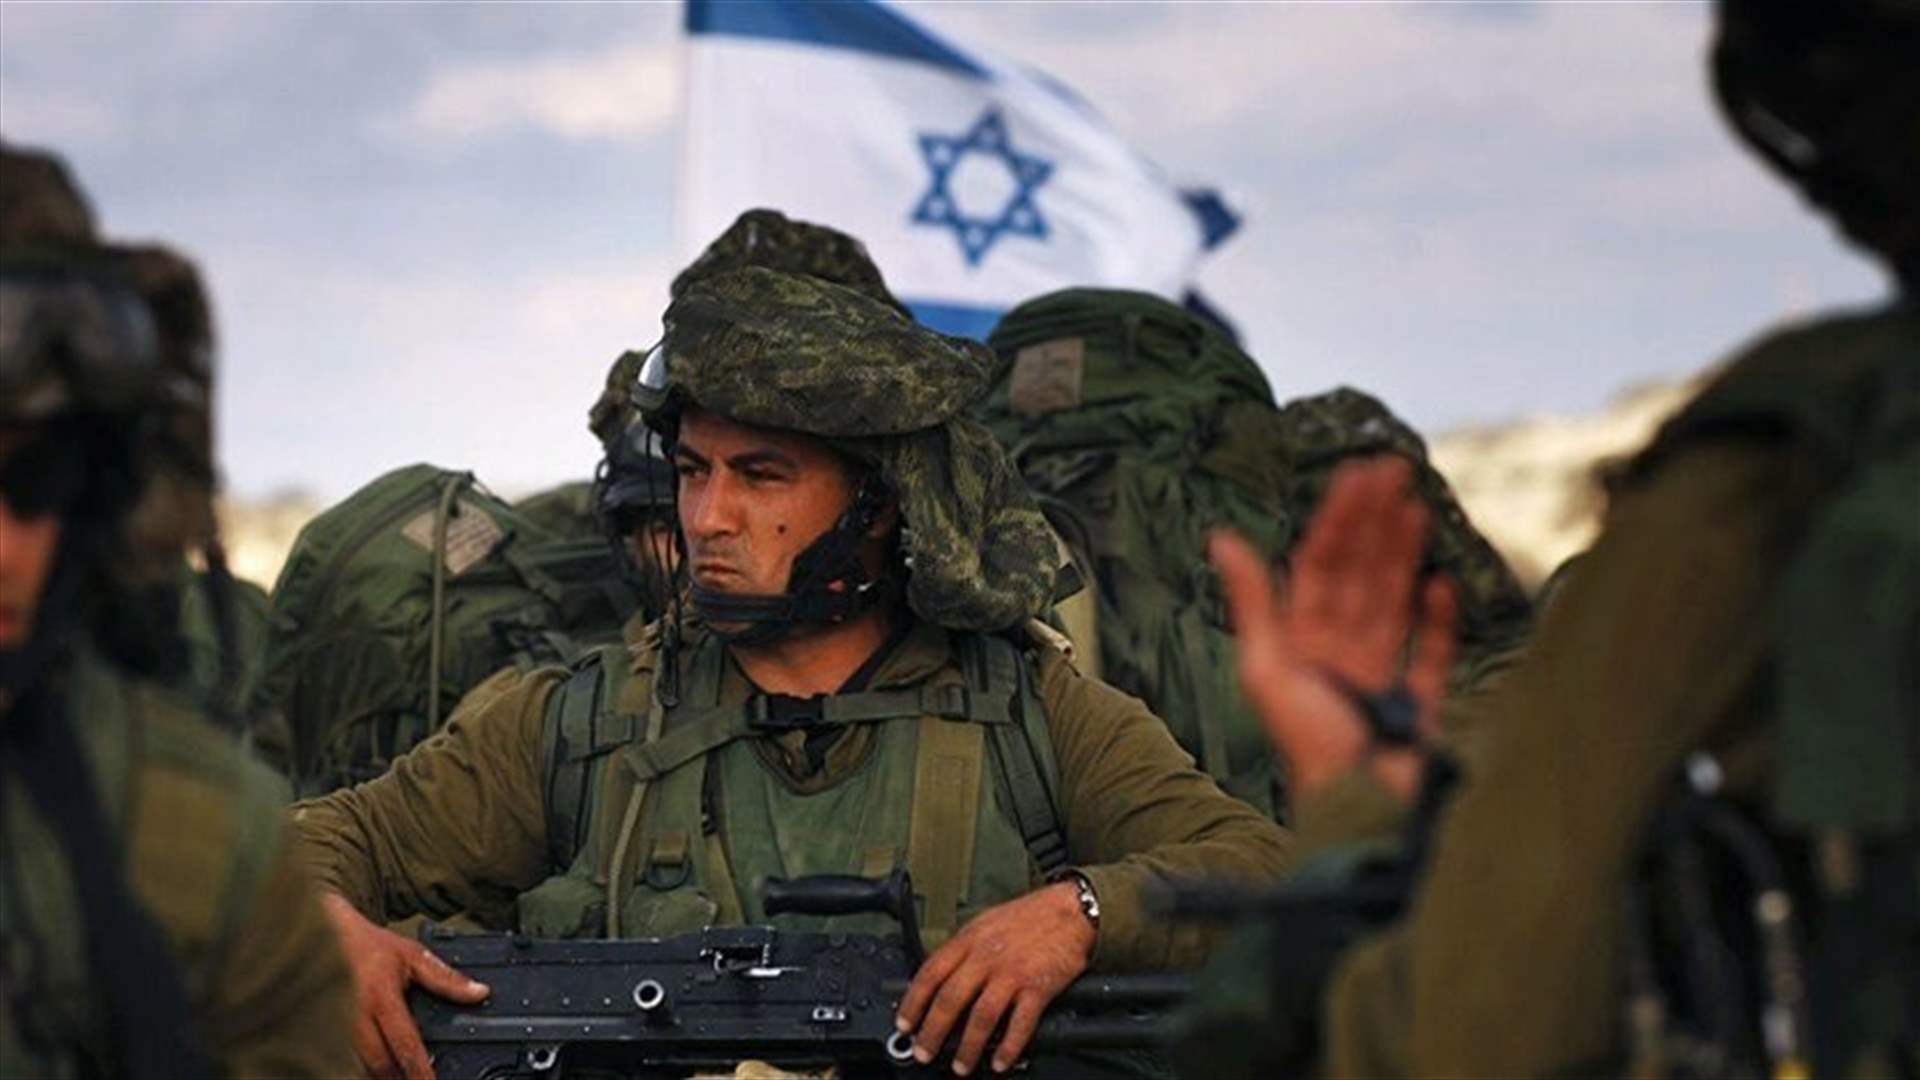 الجيش الإسرائيلي يعلن إصابة 18 جنديا في هضبة الجولان المحتلة